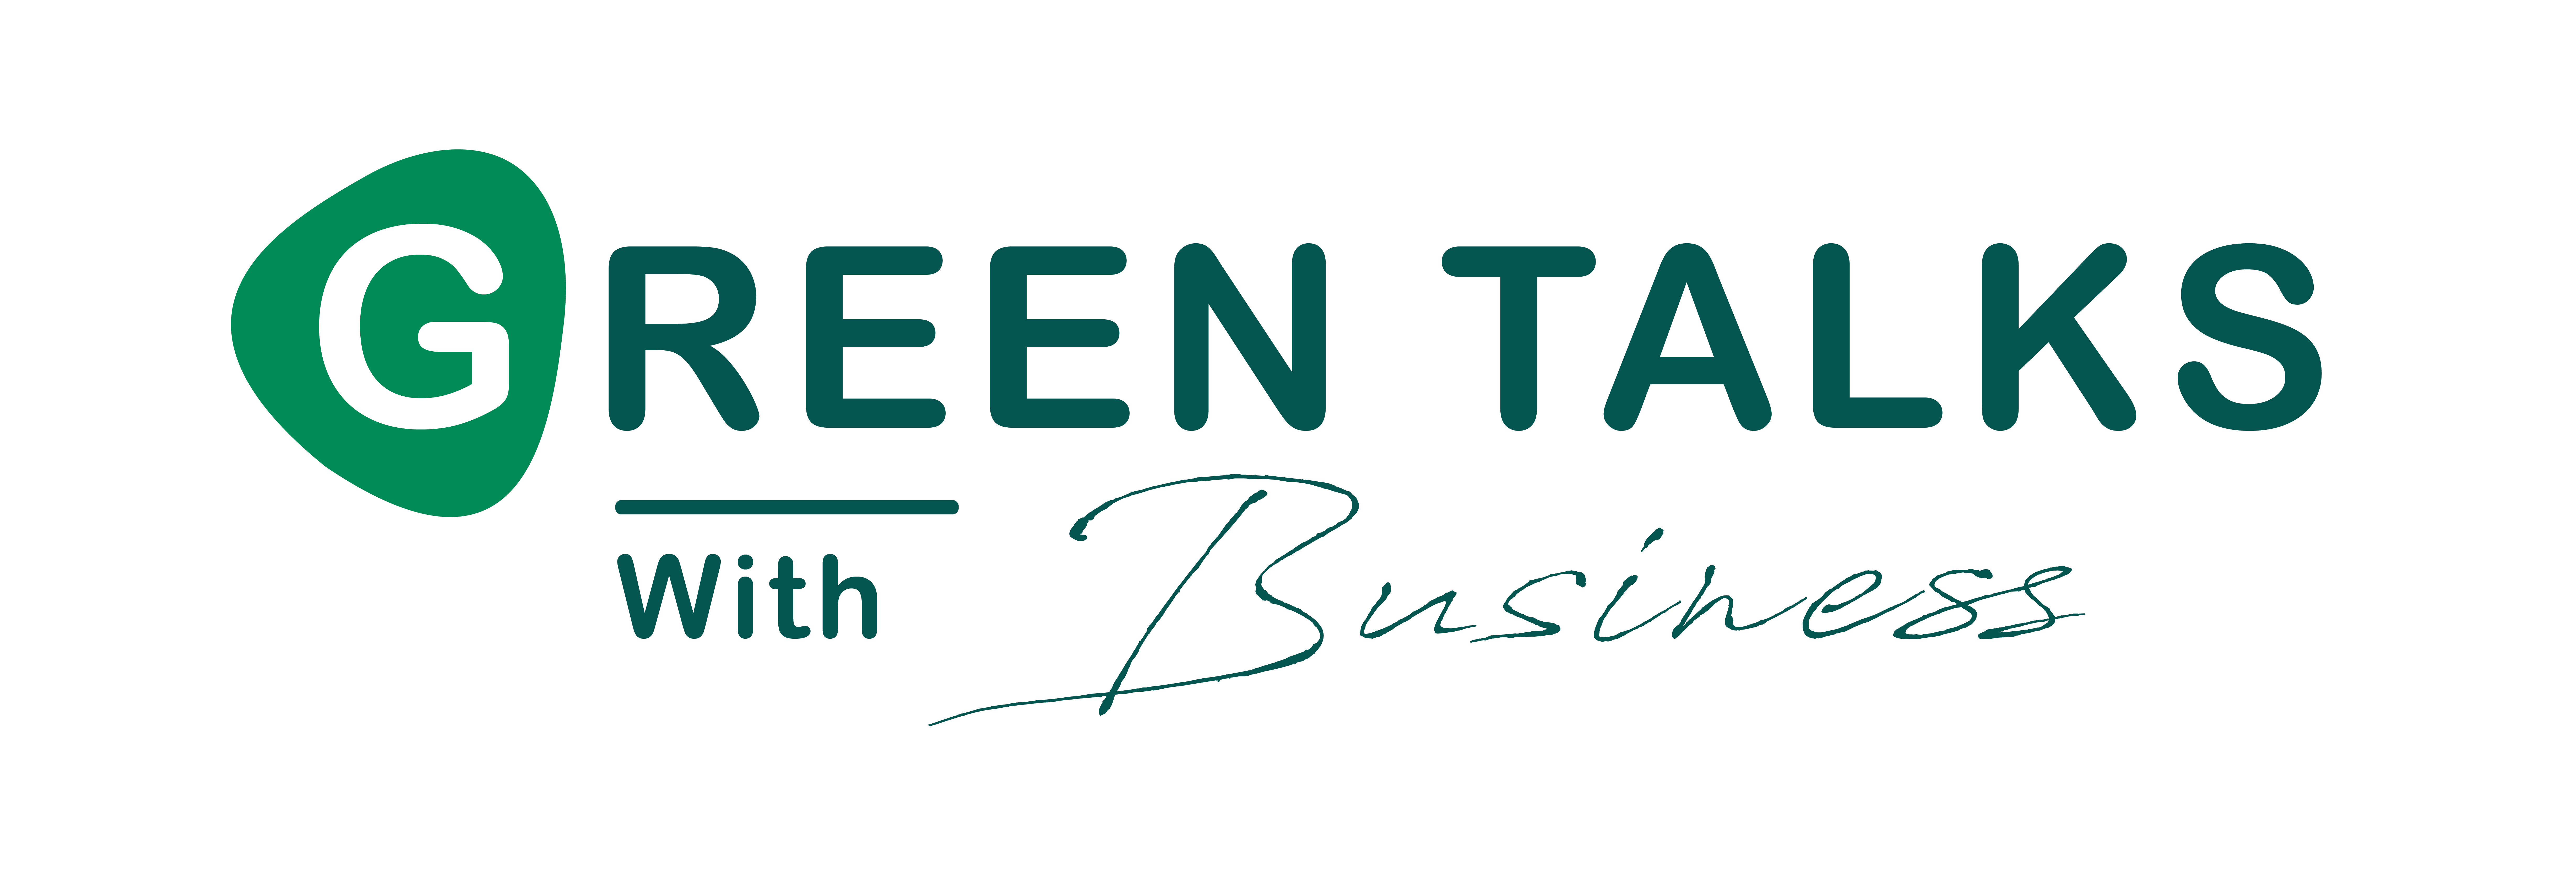 Zureli Green Talks with Business